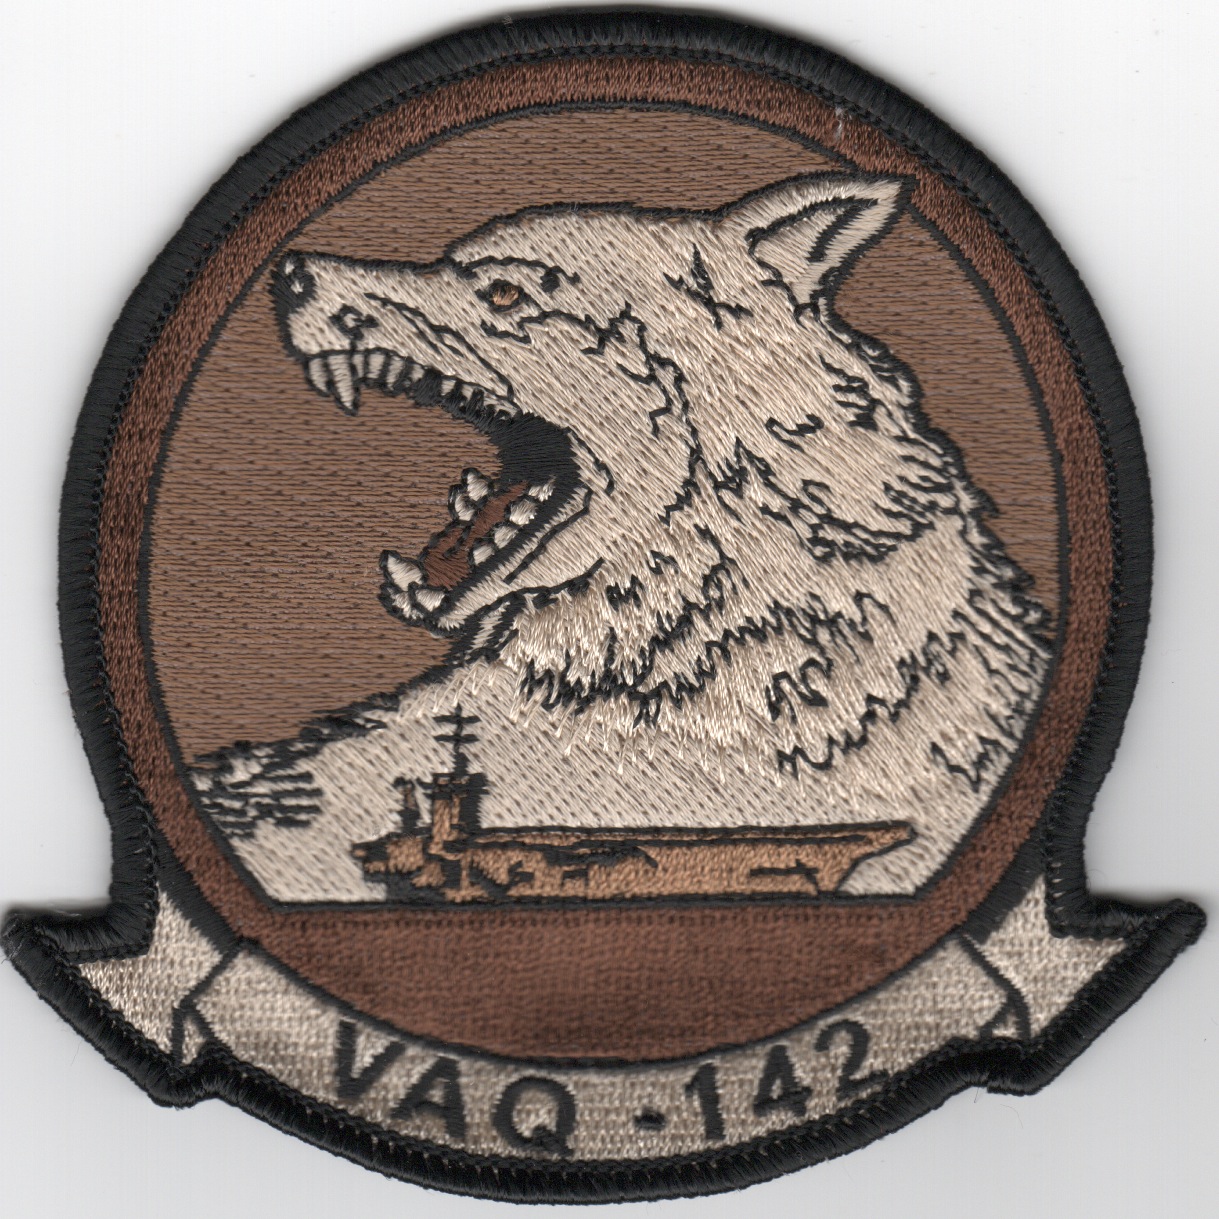 VAQ-142 Squadron (Des)